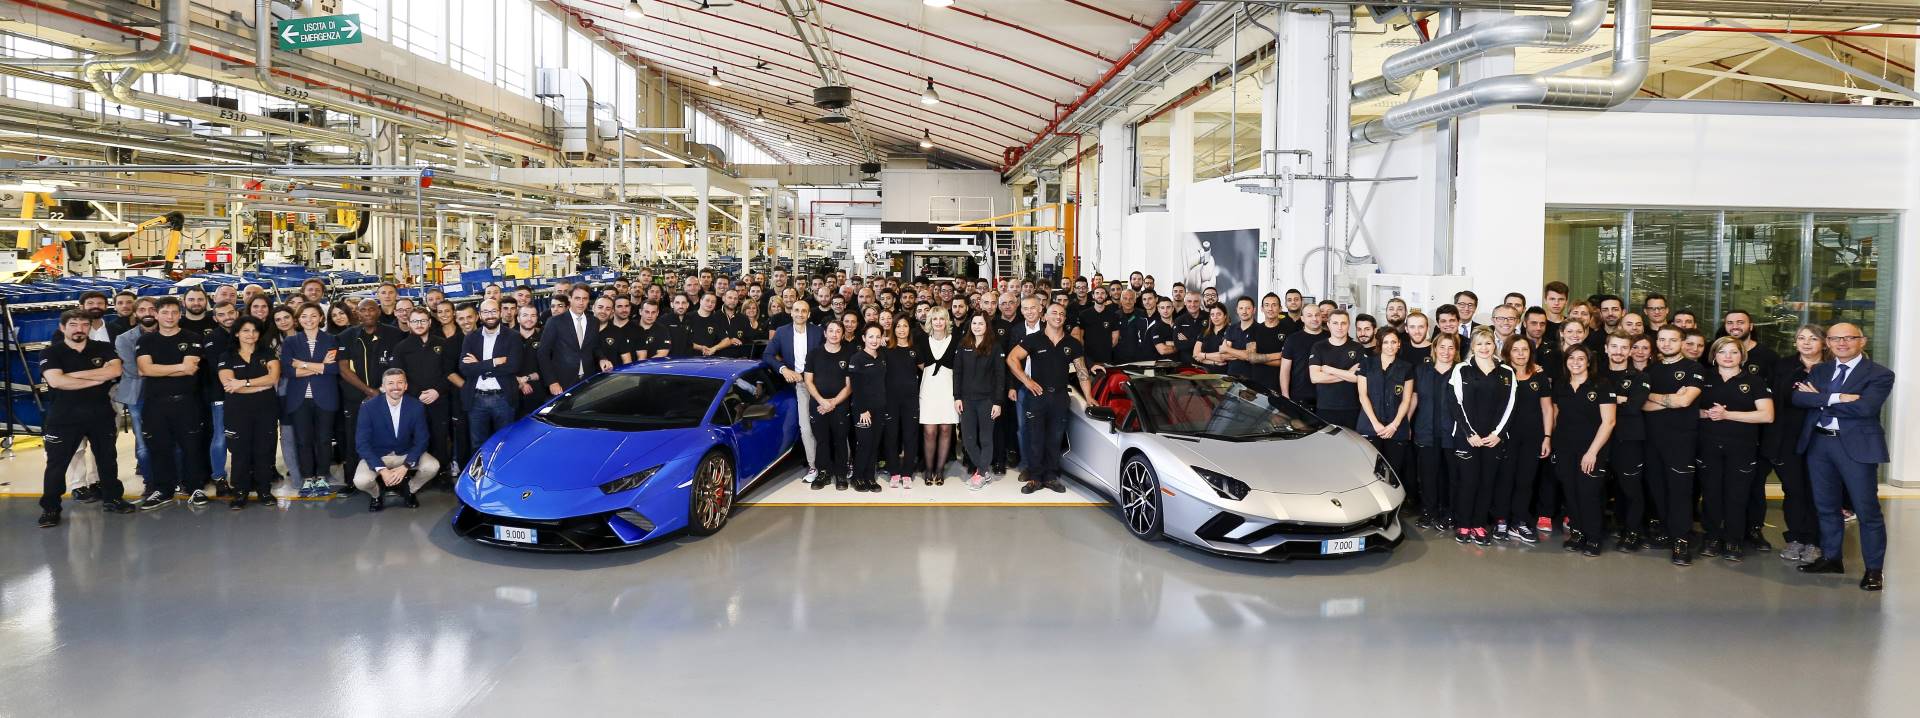 Lamborghini выпустила юбилейный Aventador и Huracan